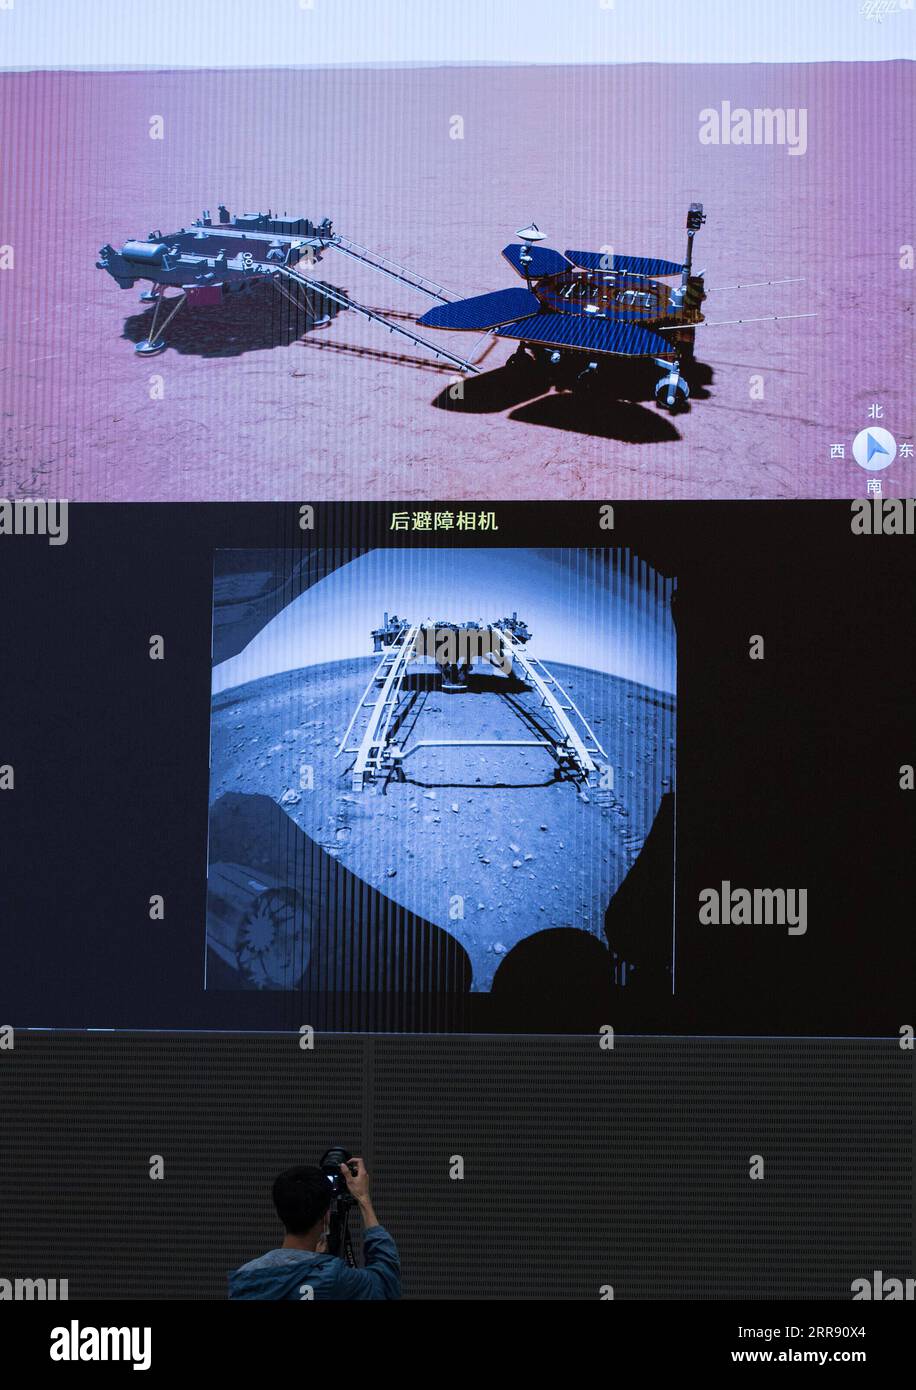 210522 -- PECHINO, 22 maggio 2021 -- Un membro dello staff registra il processo del primo rover Marte cinese, Zhurong, che scende dalla sua piattaforma di atterraggio alla superficie marziana dallo schermo del Beijing Aerospace Control Center di Pechino, capitale della Cina, 22 maggio 2021. Il primo rover marziano della Cina, Zhurong, è sceso dalla piattaforma di atterraggio alla superficie marziana sabato, lasciando le prime impronte del paese sul pianeta rosso. La prima unità di successo di Zhurong ha reso la Cina il secondo paese dopo gli Stati Uniti ad atterrare e gestire un rover su Marte. EYESONSCI CHINA-BEIJING-MARS ROVER-DRIVE C. Foto Stock